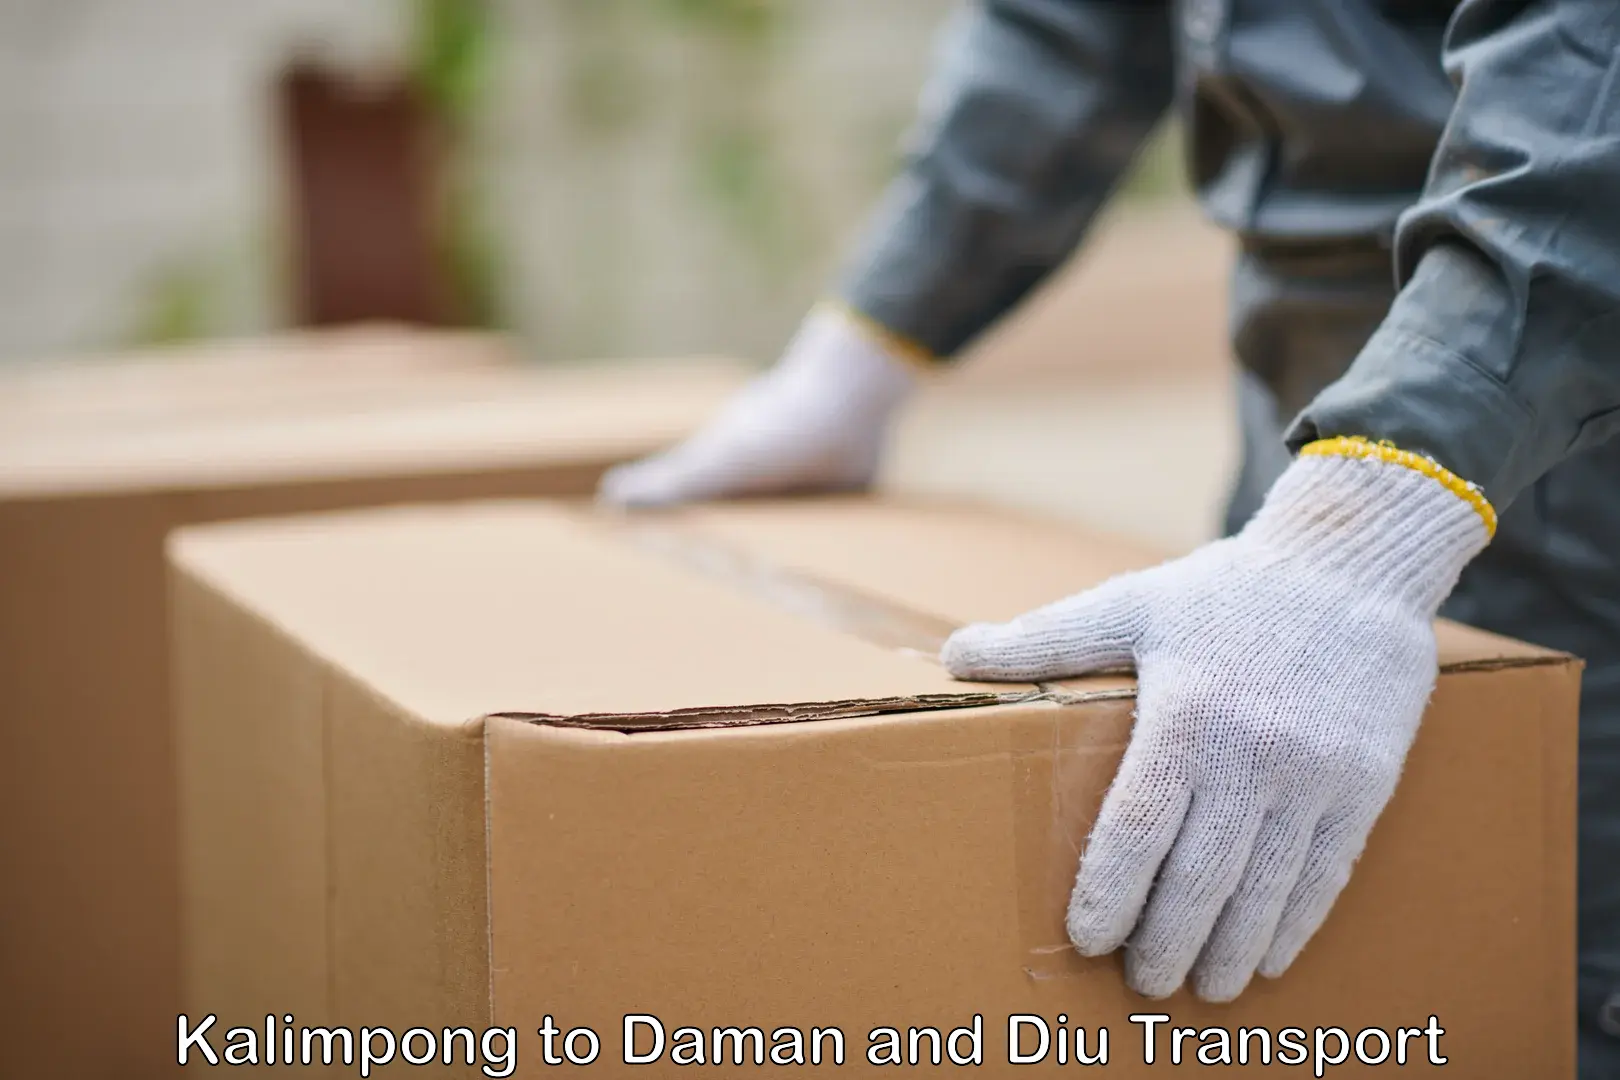 Furniture transport service Kalimpong to Daman